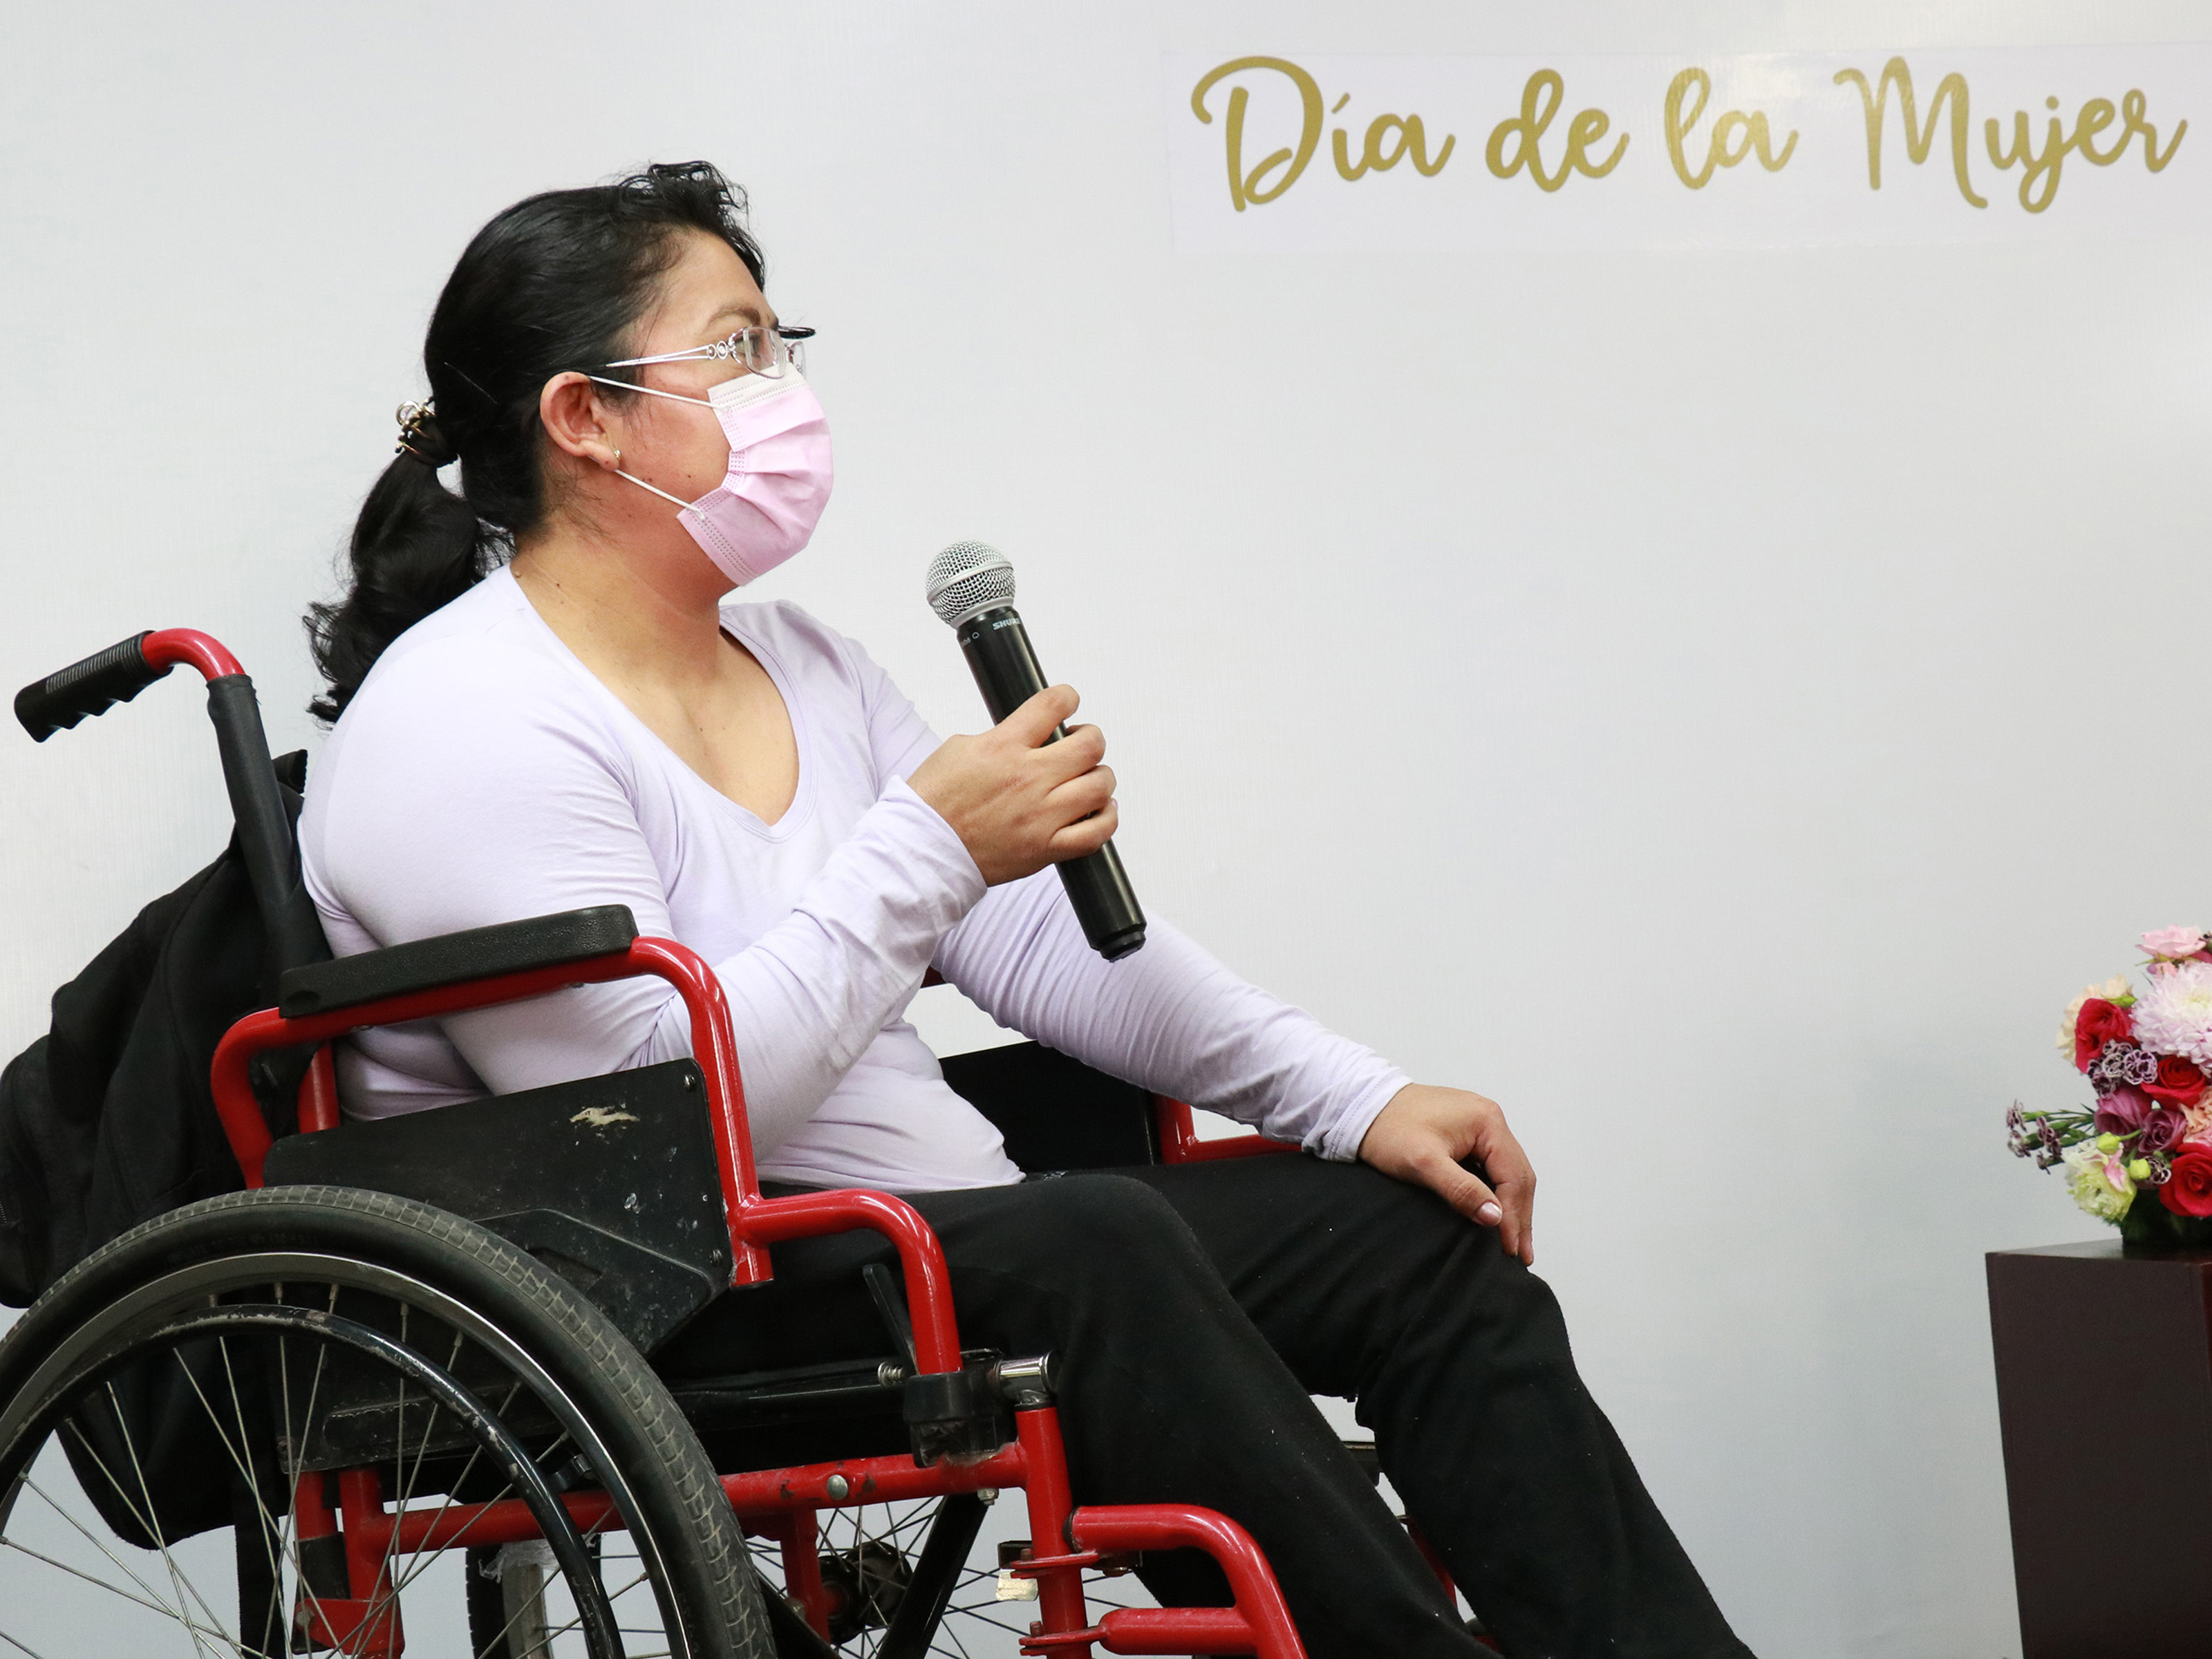 Convoca Rosario Orozco Caballero a fomentar una sociedad igualitaria